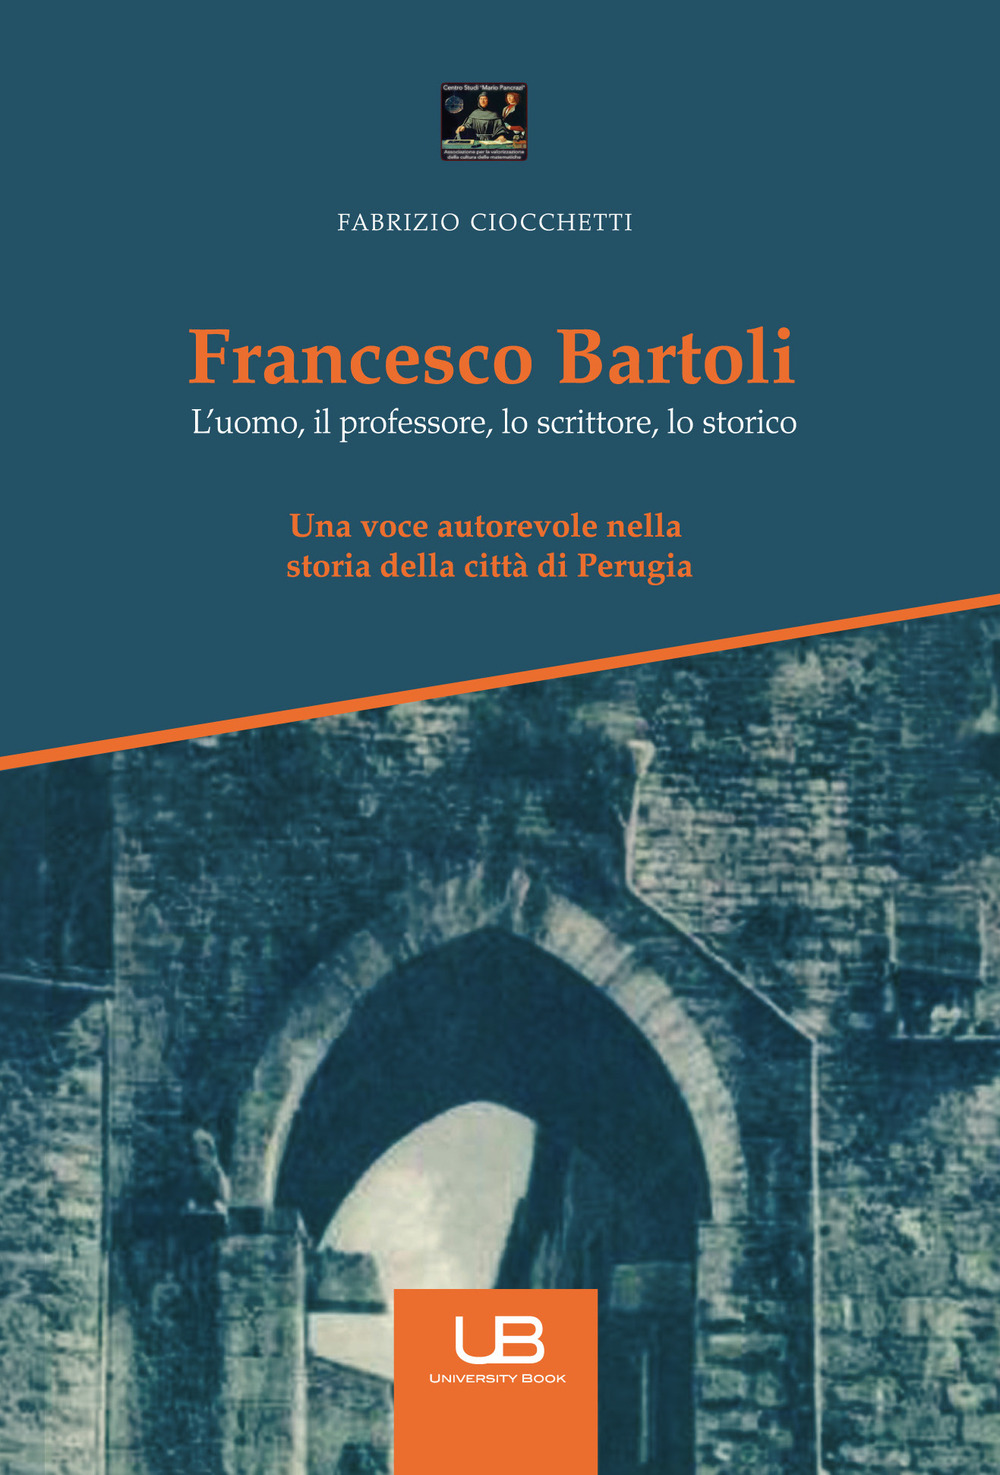 Francesco Bartoli. L'uomo, il professore, lo scrittore, lo storico